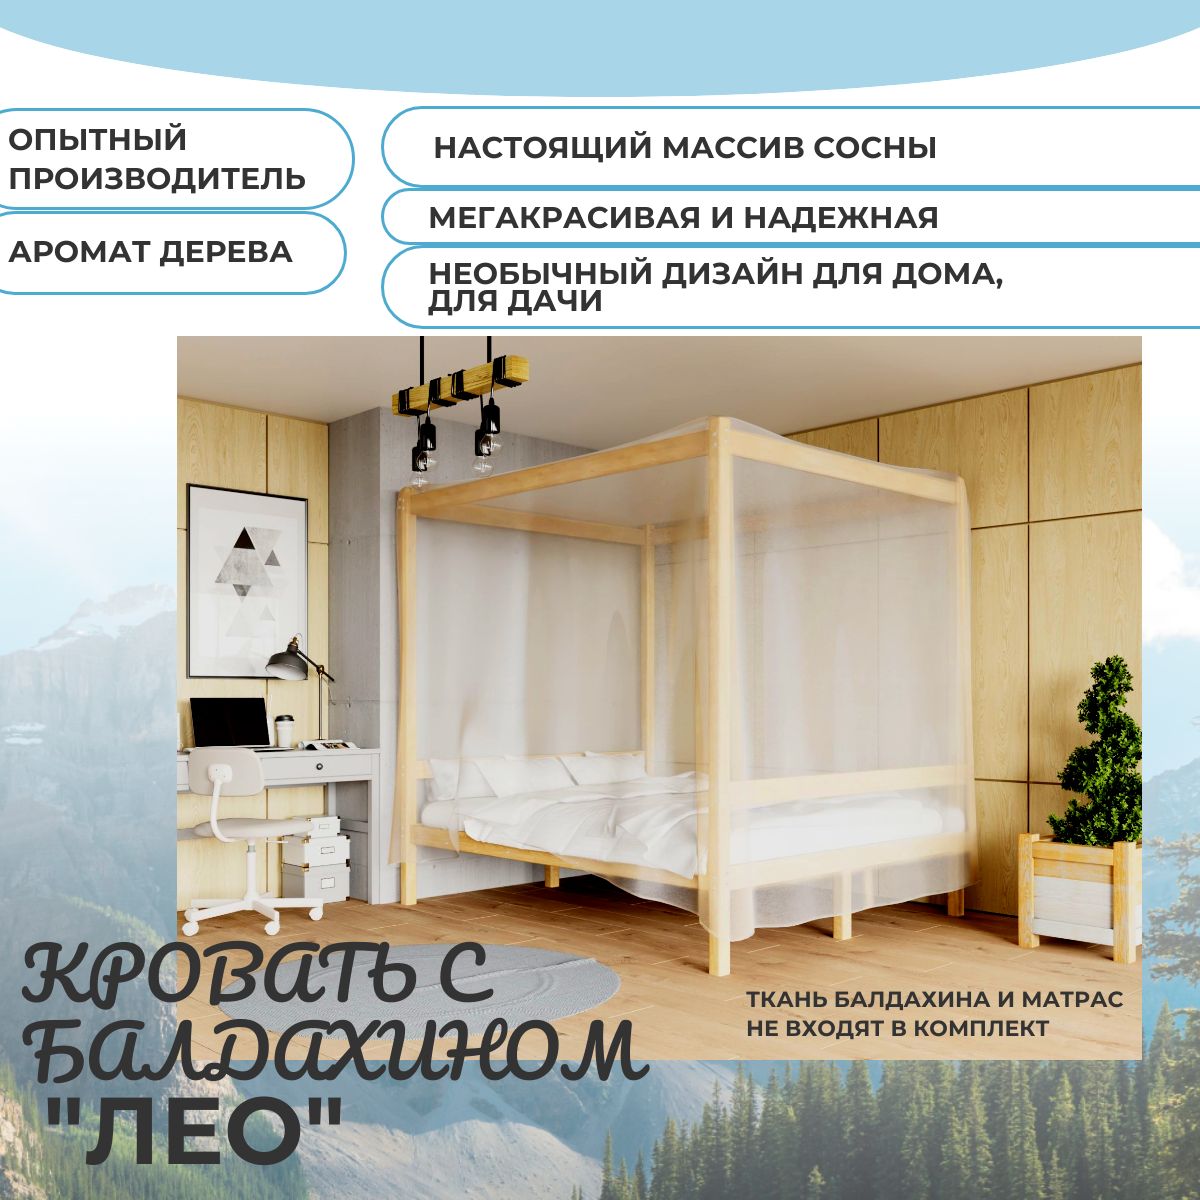 Двуспальная кровать с балдахином (конструкция для балдахина) из натуральной  сосны 